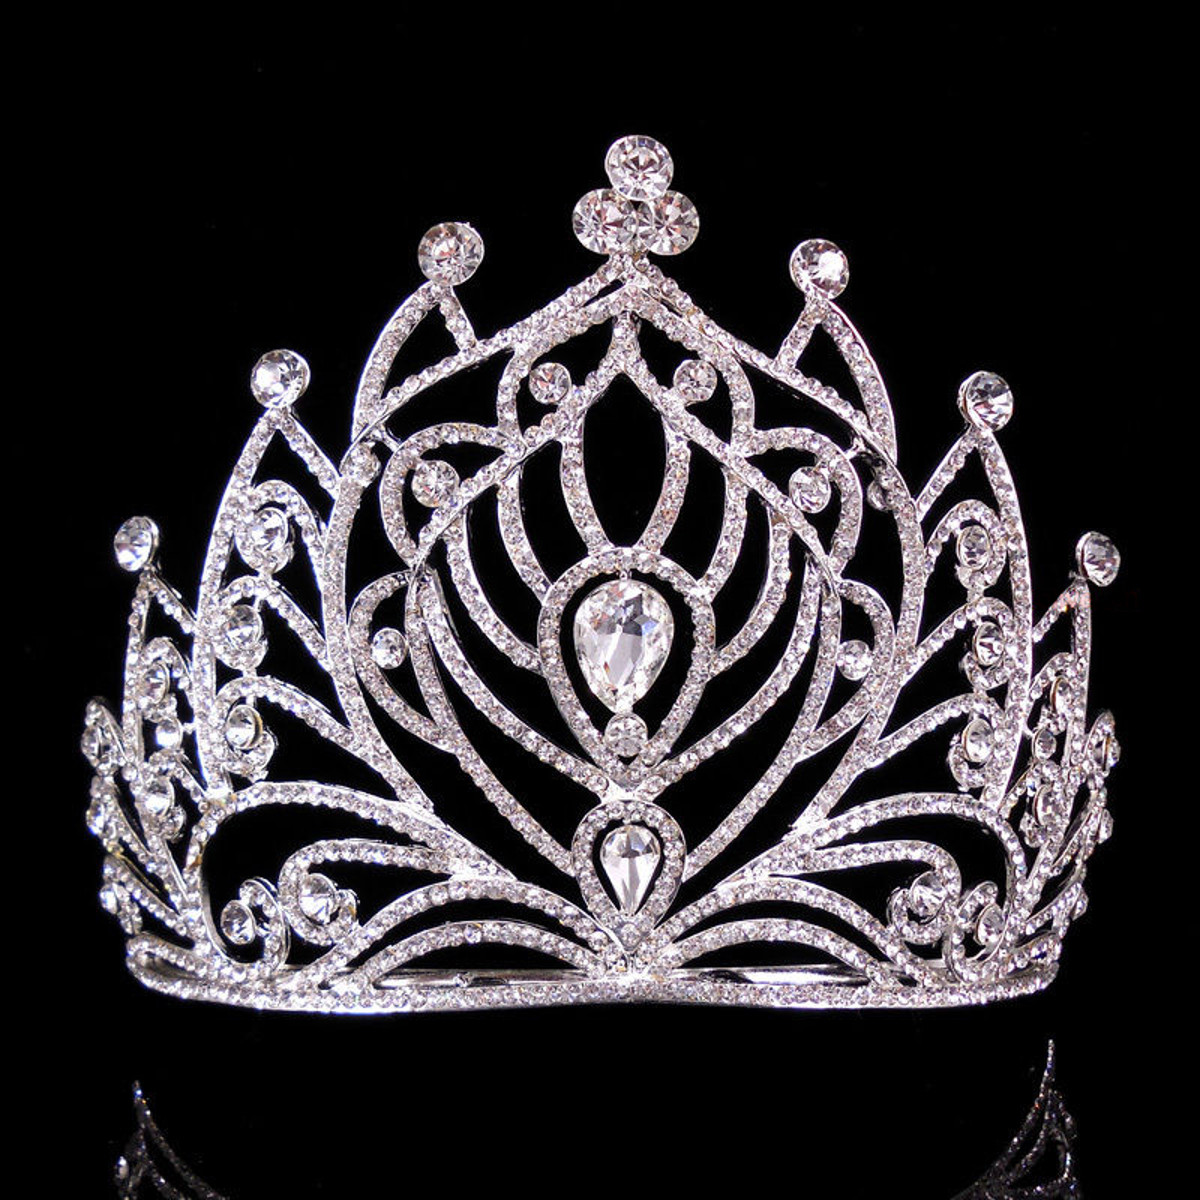 

Невеста горный хрусталь хрустальная корона Свадебное Конкурс для новобрачных тиара гребень принцессы королевы головной убор